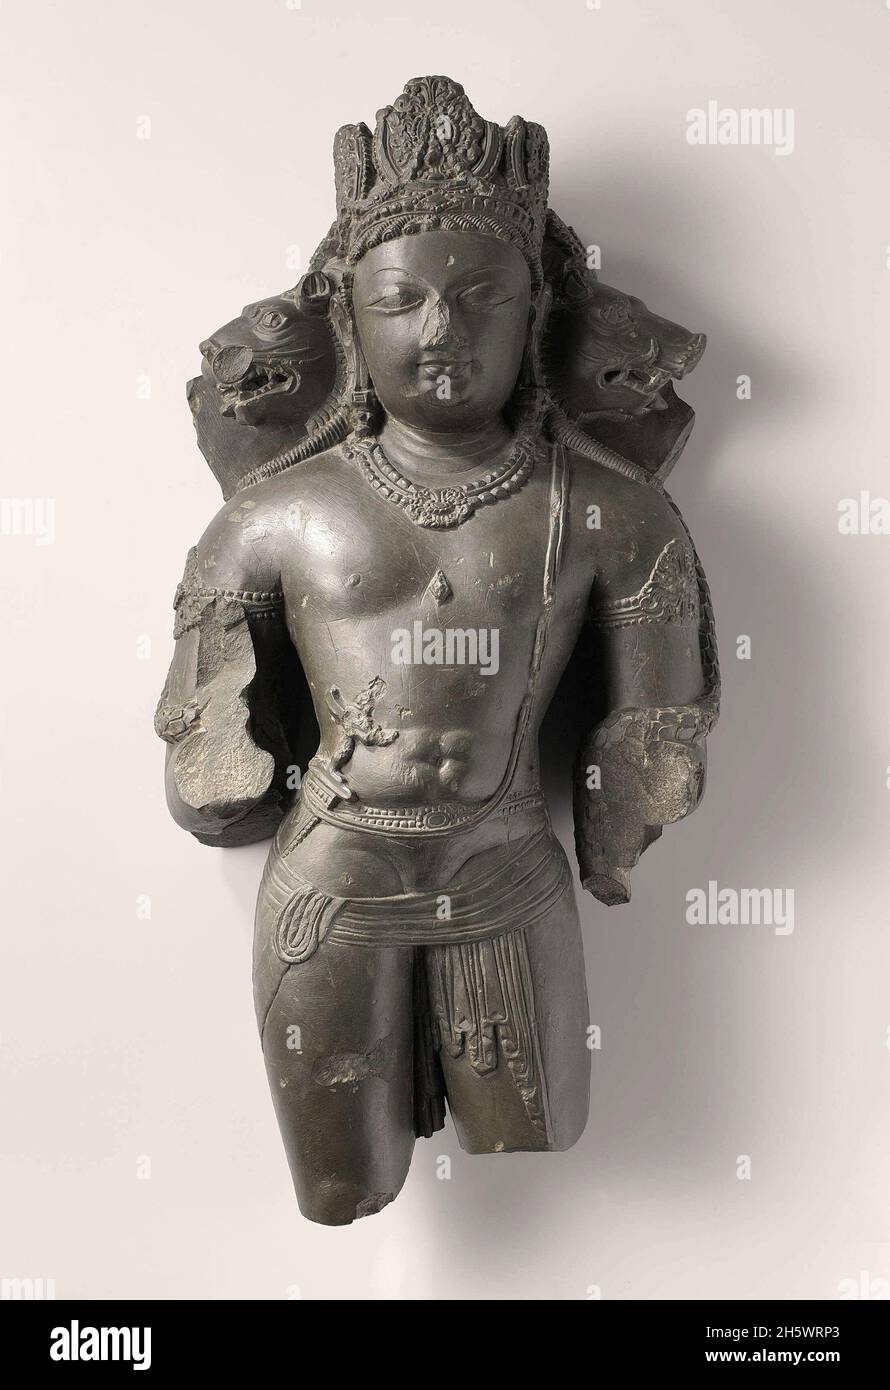 La scultura in pietra di un Vishnu Vishnu a tre teste è rappresentata qui con due teste aggiuntive, quella di un leone e quella di un cinghiale. In origine aveva anche quattro braccia. Questa manifestazione del dio Indù fu particolarmente popolare nel Kashmir tra l'VIII e il decimo secolo. La corona tripartita e la parte superiore muscolare sono tra le caratteristiche della scultura del Kashmir. Foto Stock